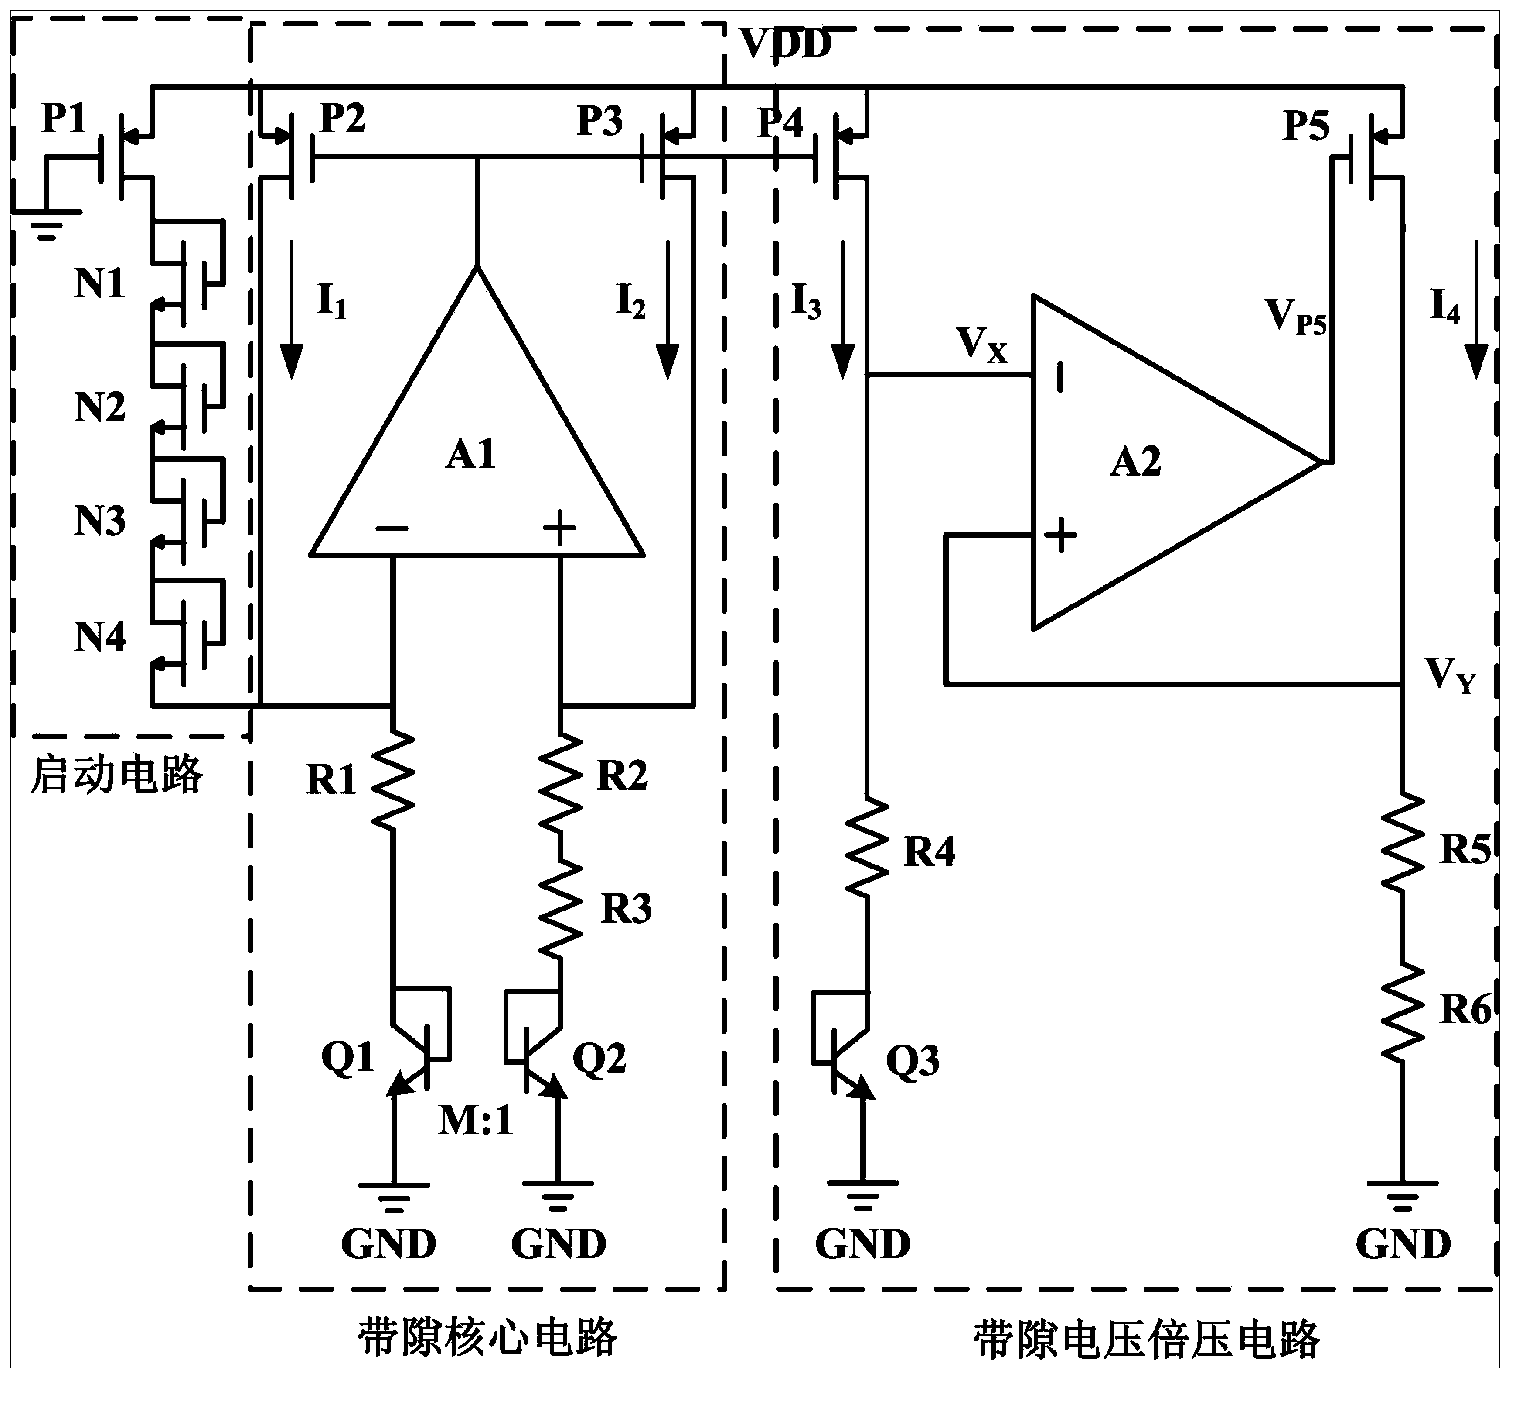 Low-noise amplifier structure